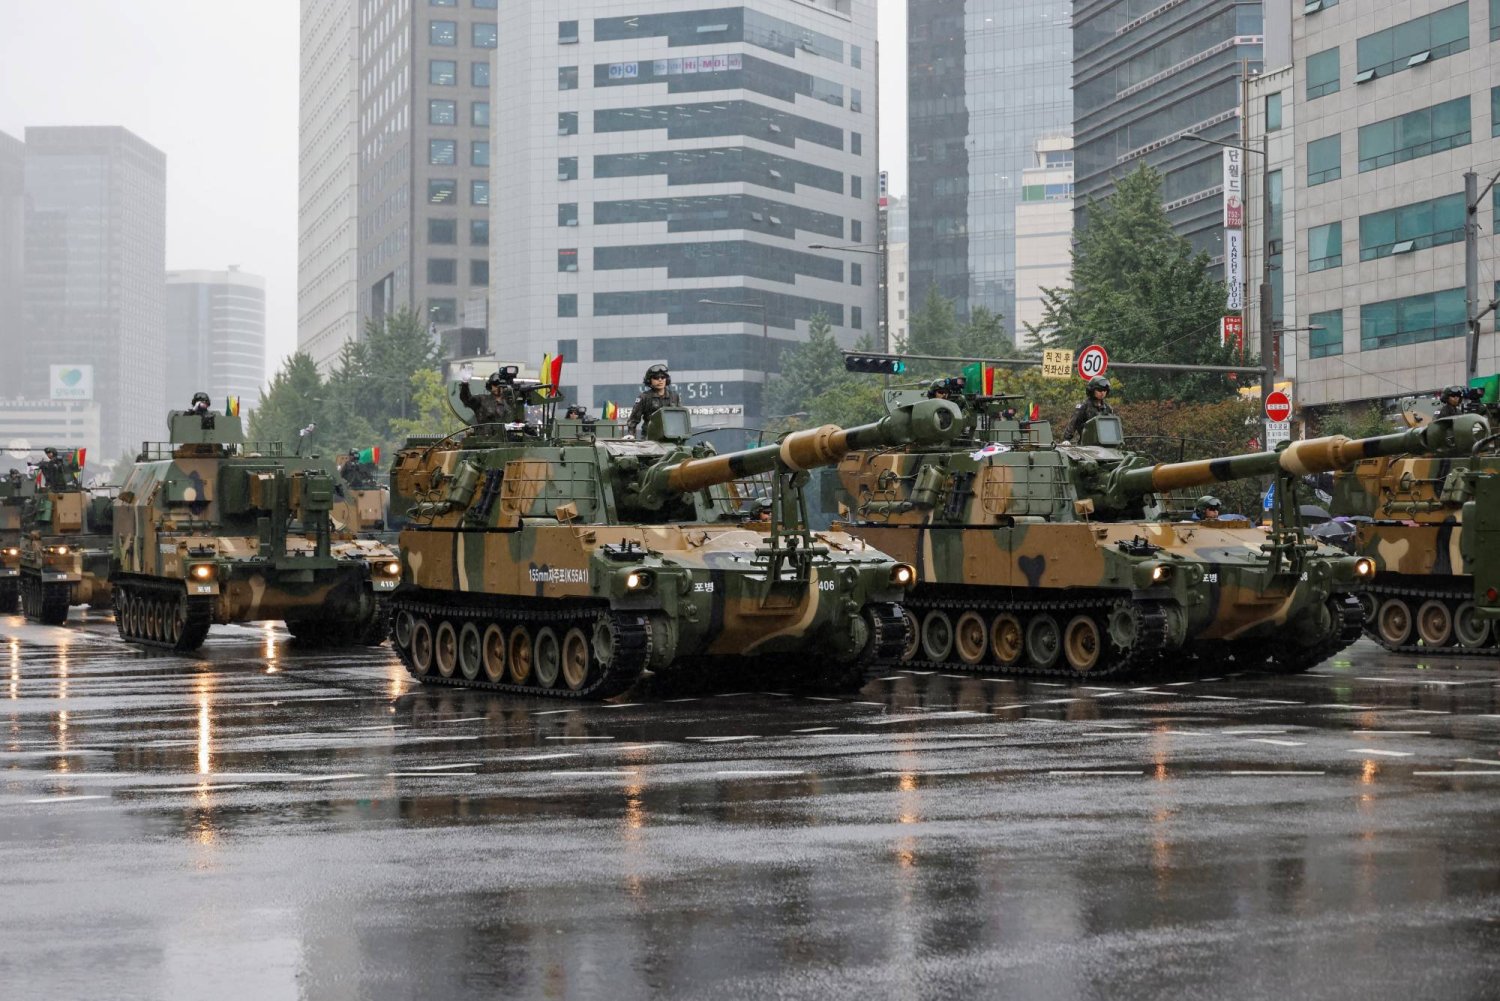 كوريا الجنوبية ستصبح أول دولة في العالم تنشر وتشغل مثل هذه الأسلحة في الجيش (رويترز)